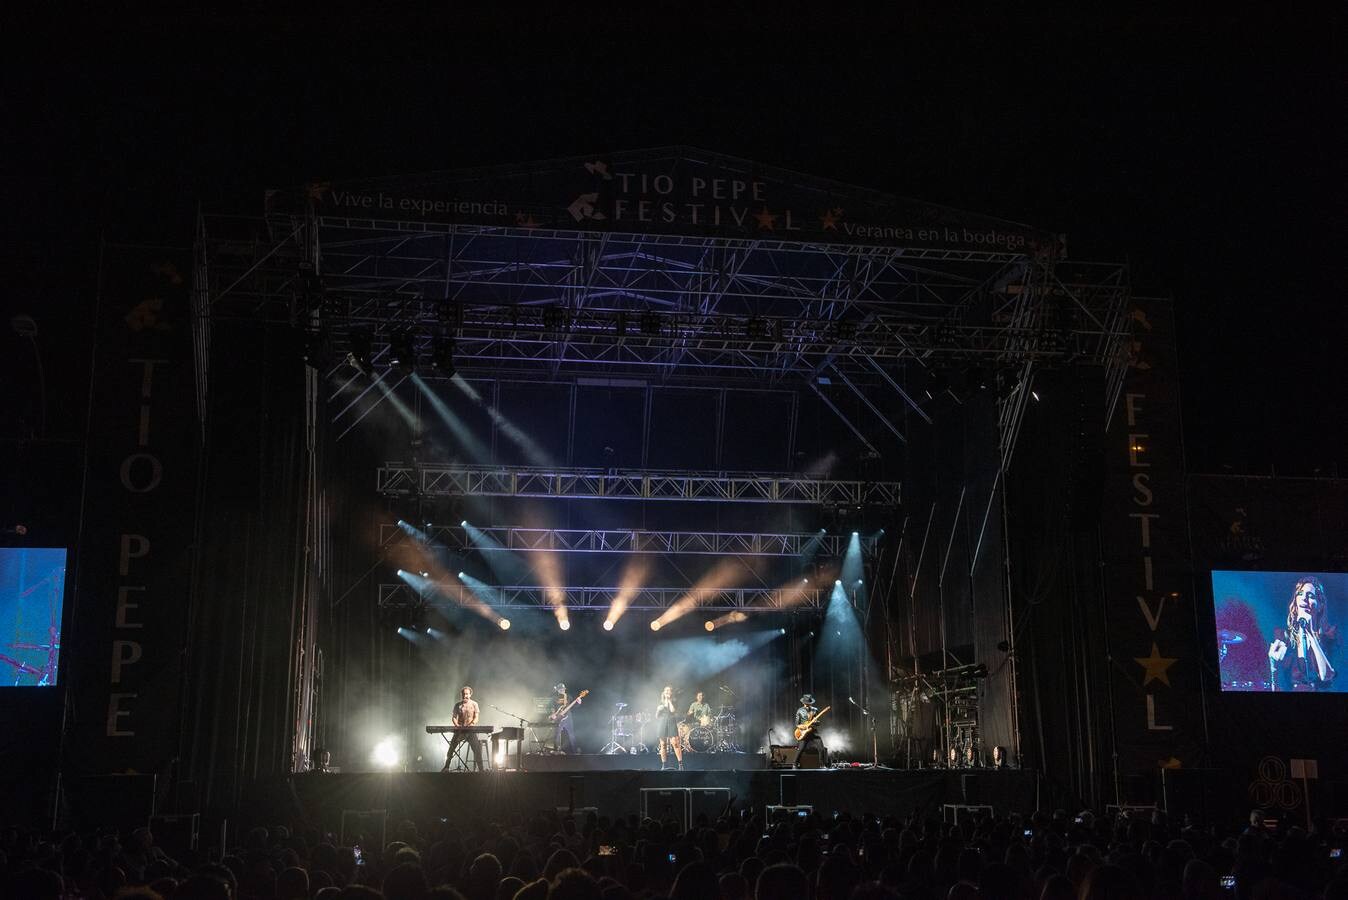 Las imágenes del concierto de la Oreja de Van Gogh en Tío Pepe Festival de Jerez